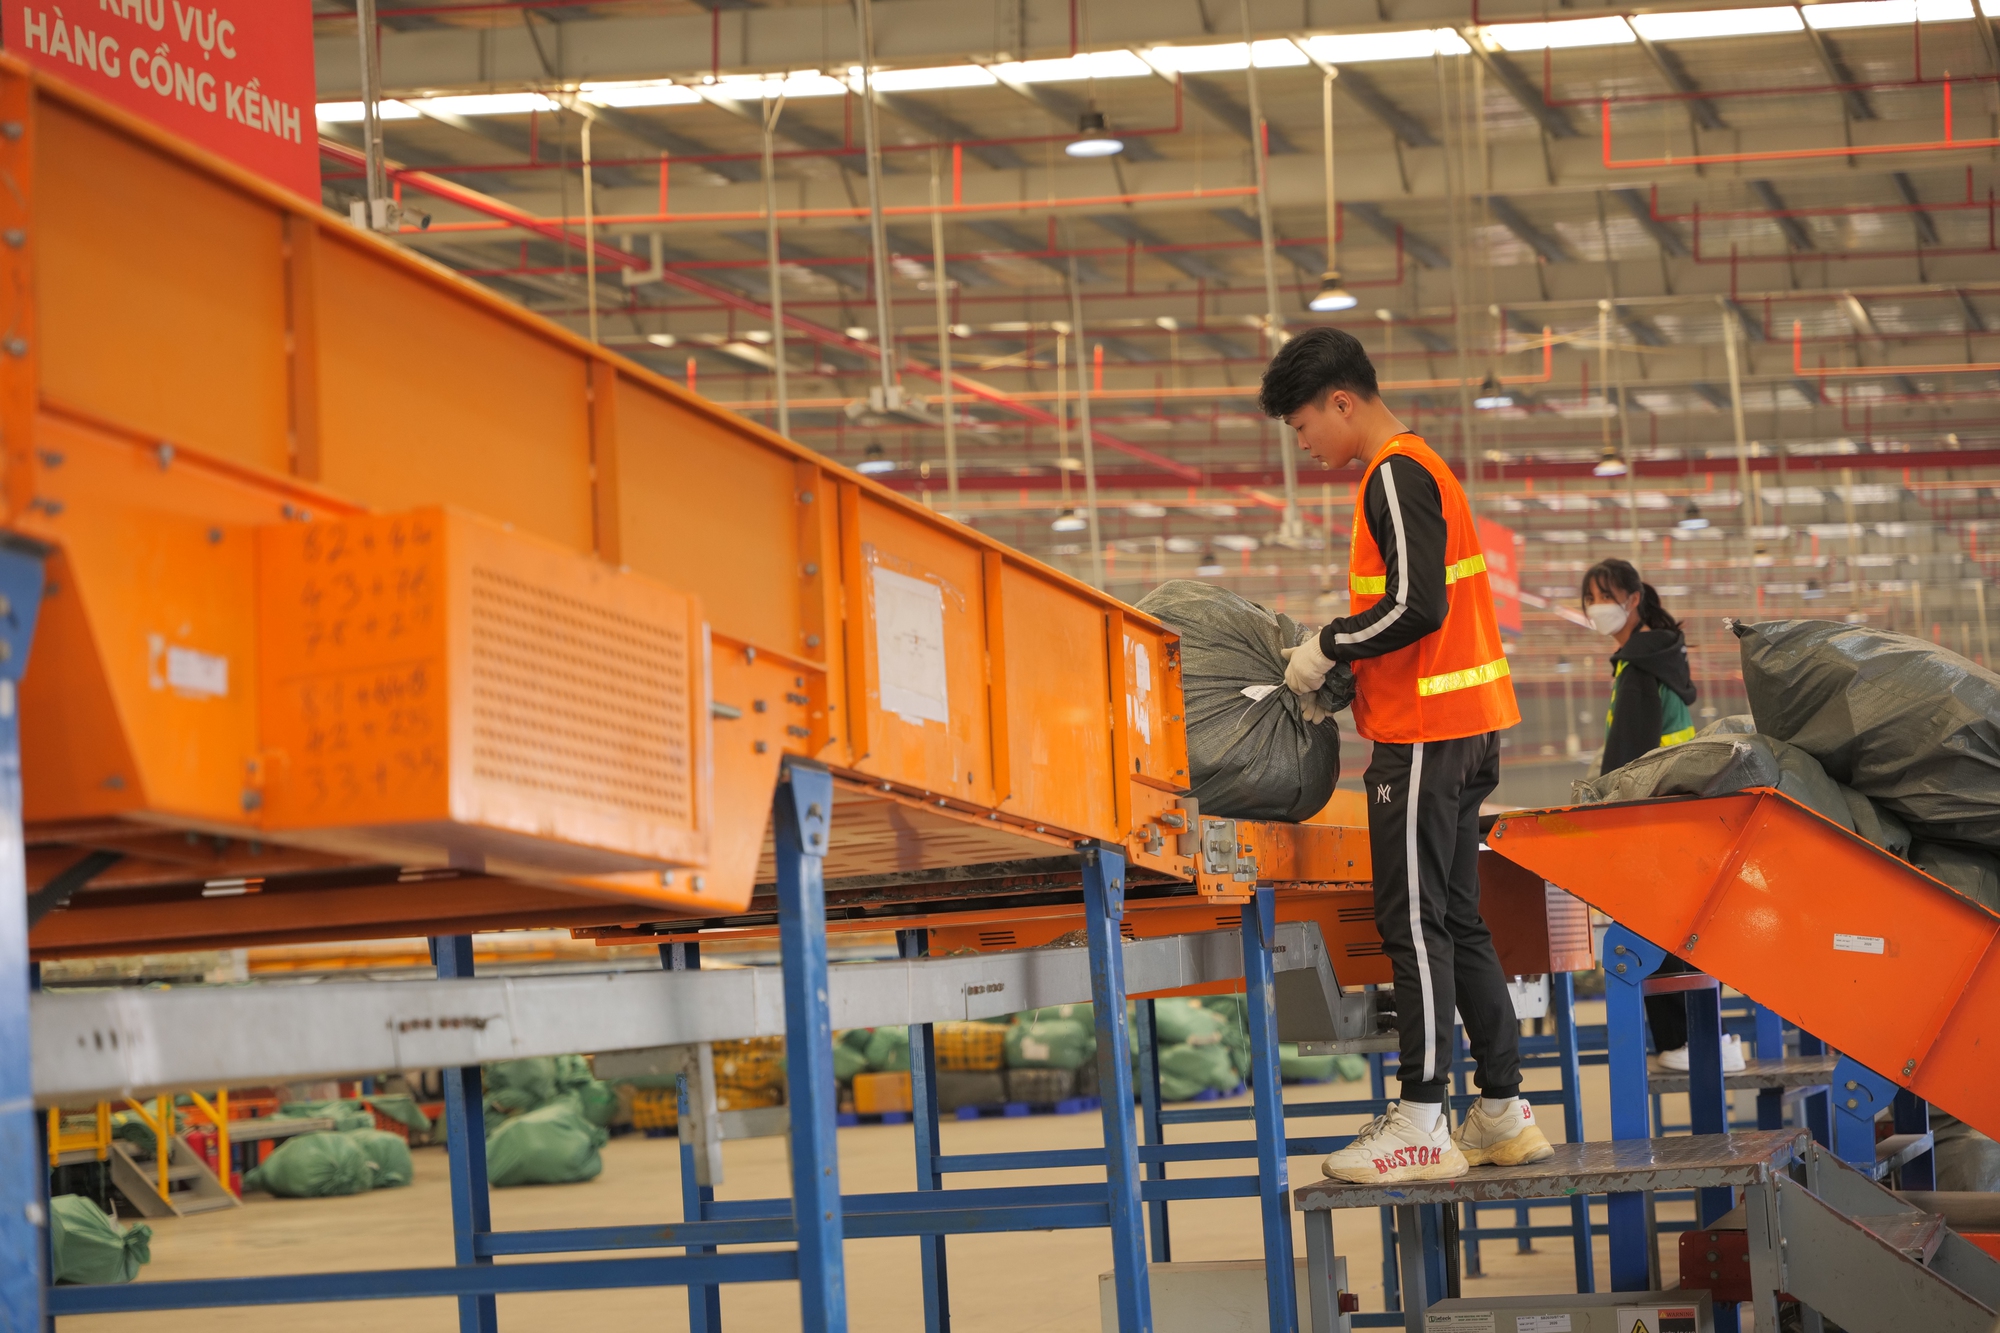 Kho chia chọn triệu USD của GHN tại Hà Nội: Công nghệ tự cân đo trọng lượng, kích thước và phân loại kiện hàng, xử lý tới 3,5 triệu đơn/ngày - Ảnh 10.